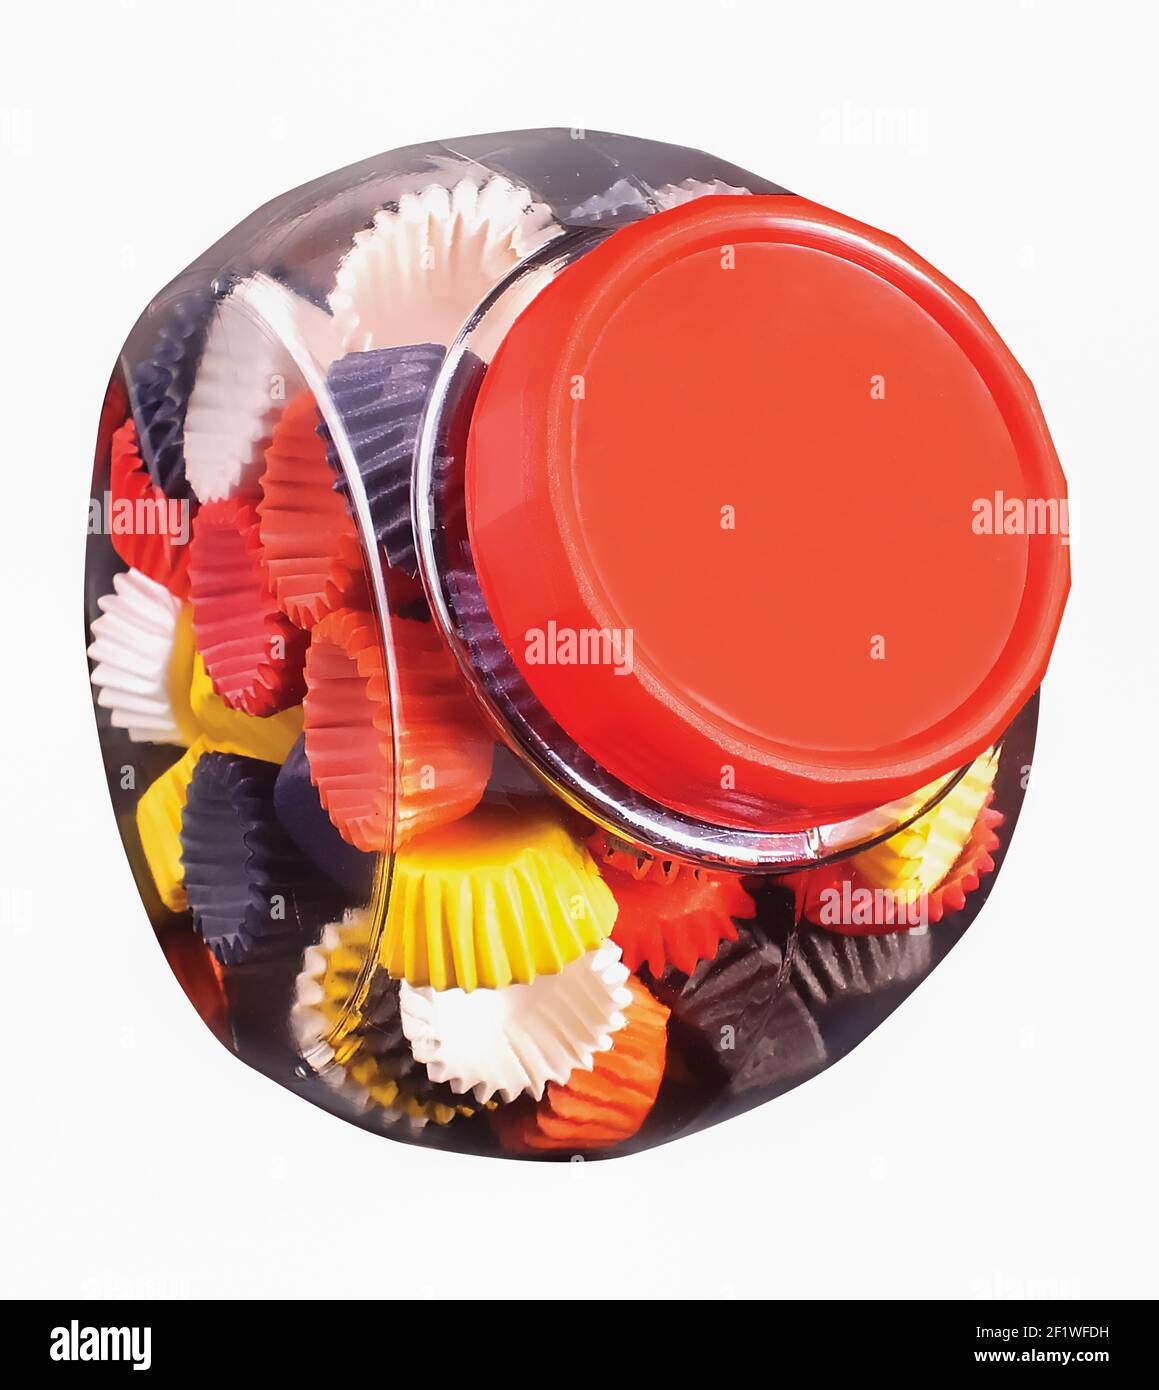 Papierkörbe in einem Glasgefäß, ein Produkt, das von der Lebensmittelindustrie oder Süßwaren verwendet wird Stockfoto